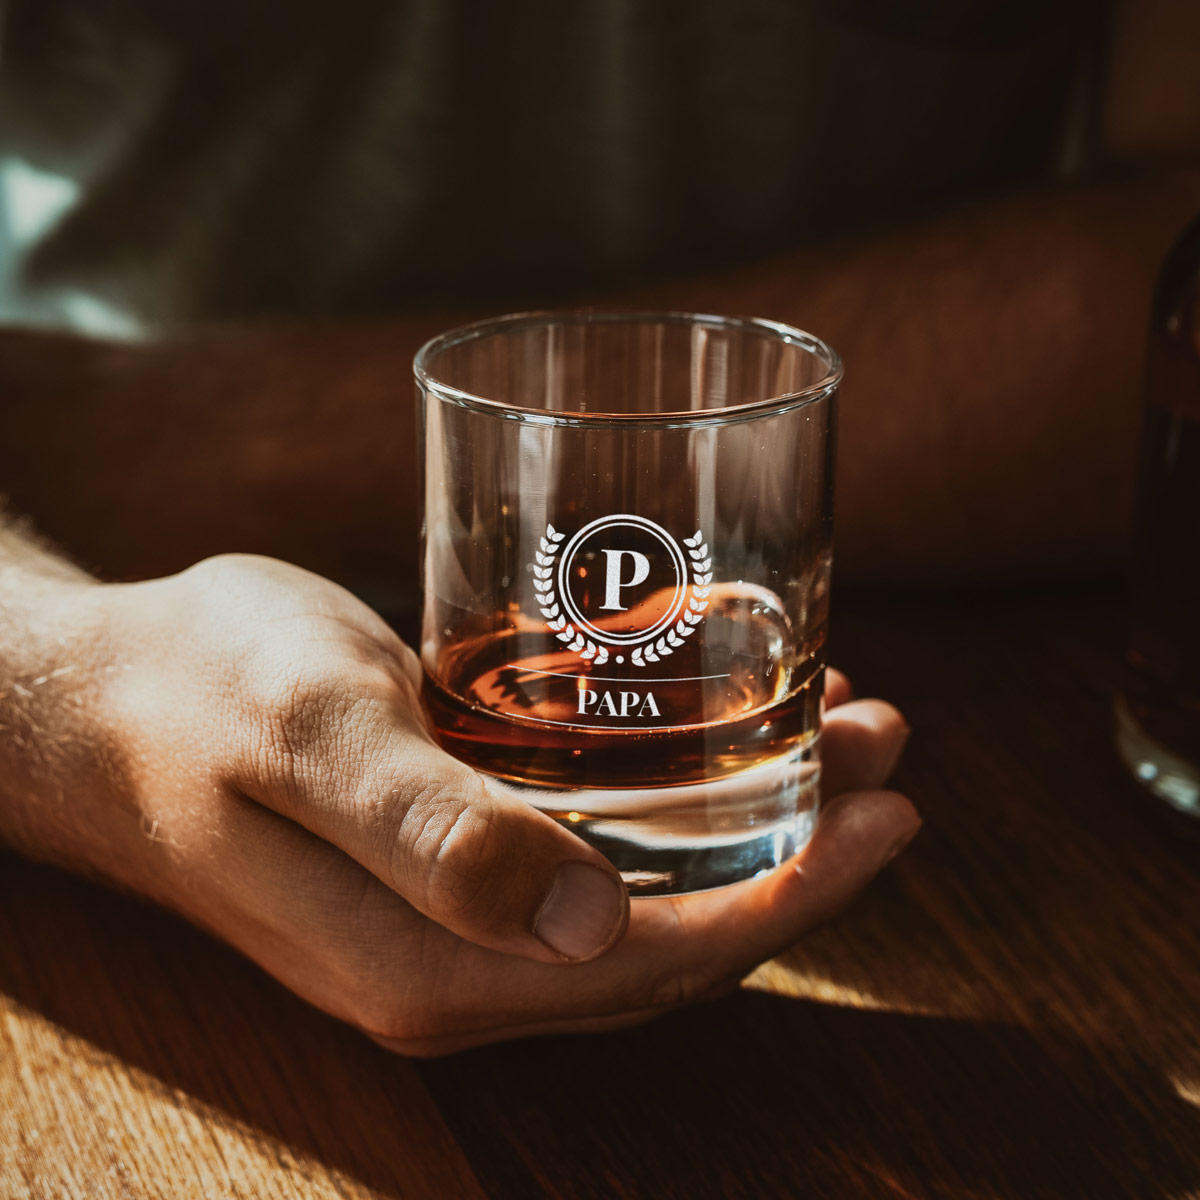 Bicchiere da Whisky Personalizzato con Monogramma